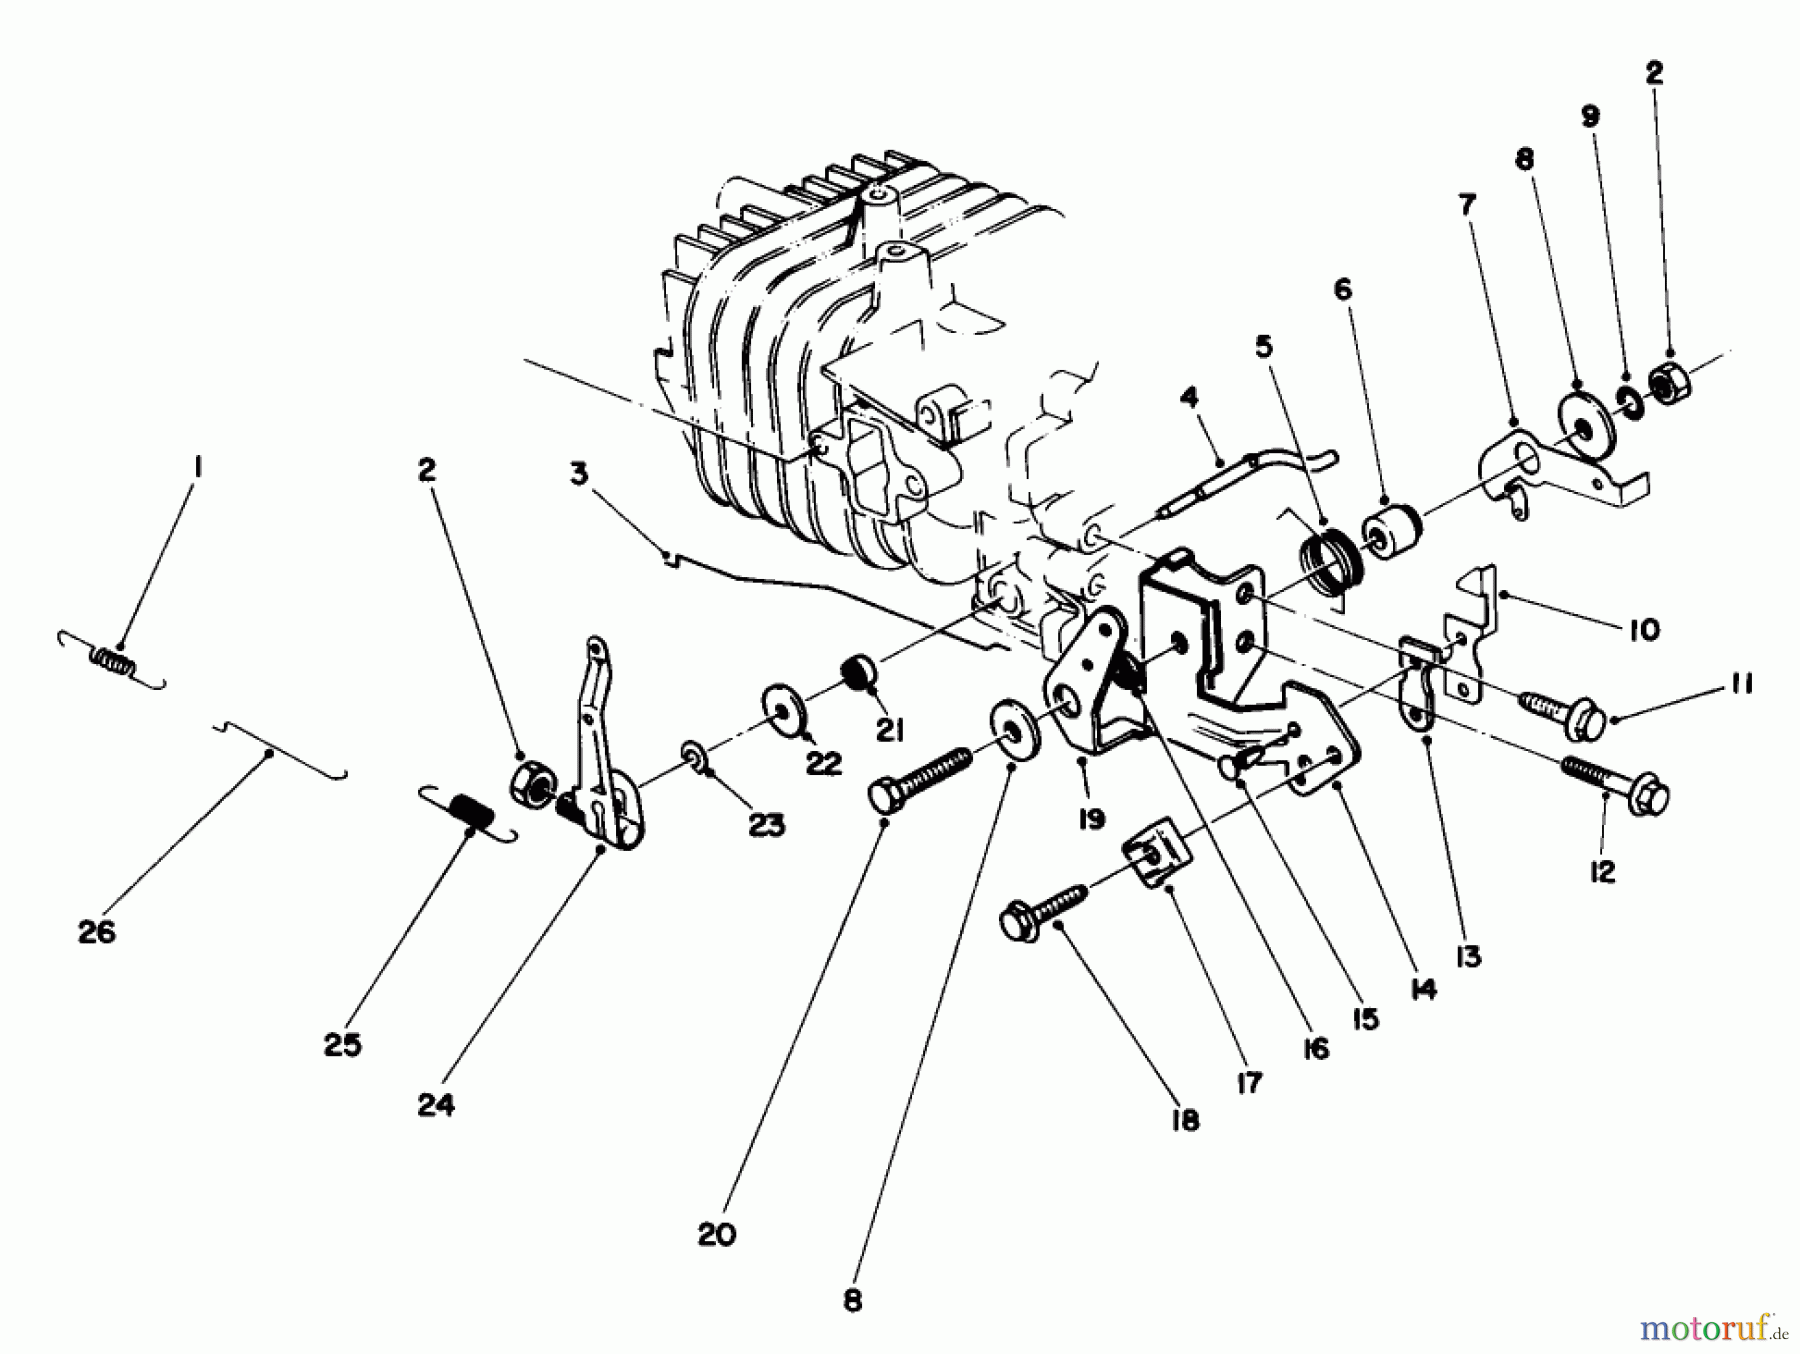  Toro Neu Mowers, Walk-Behind Seite 2 22035 - Toro Lawnmower, 1988 (8000001-8002989) ENGINE ASSEMBLY MODEL NO. 47PH7 #4